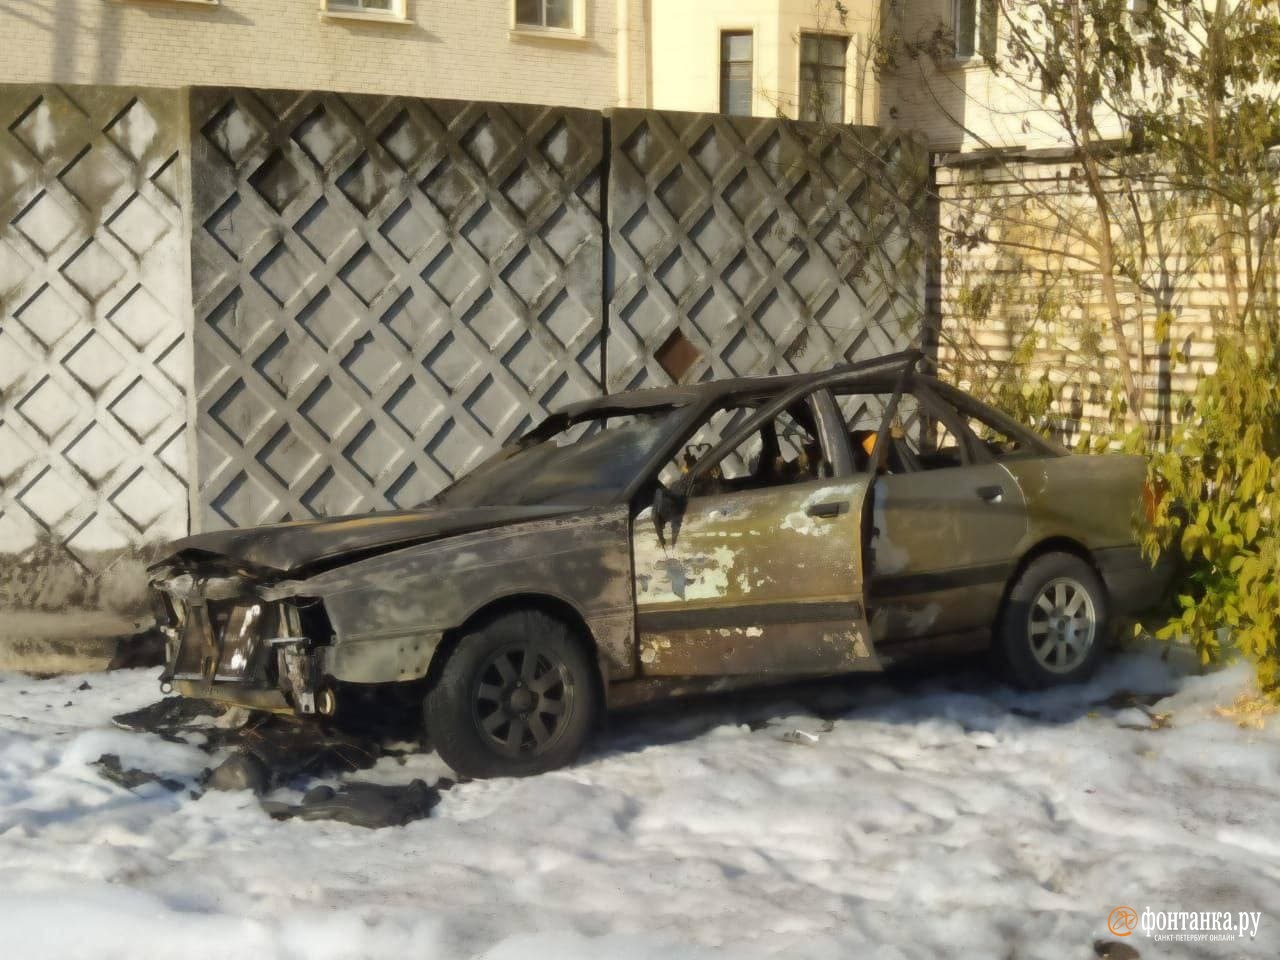 На юге Петербурга горящая «Ауди» заставила понервничать и других автовладельцев. Успокоила их Росгвардия